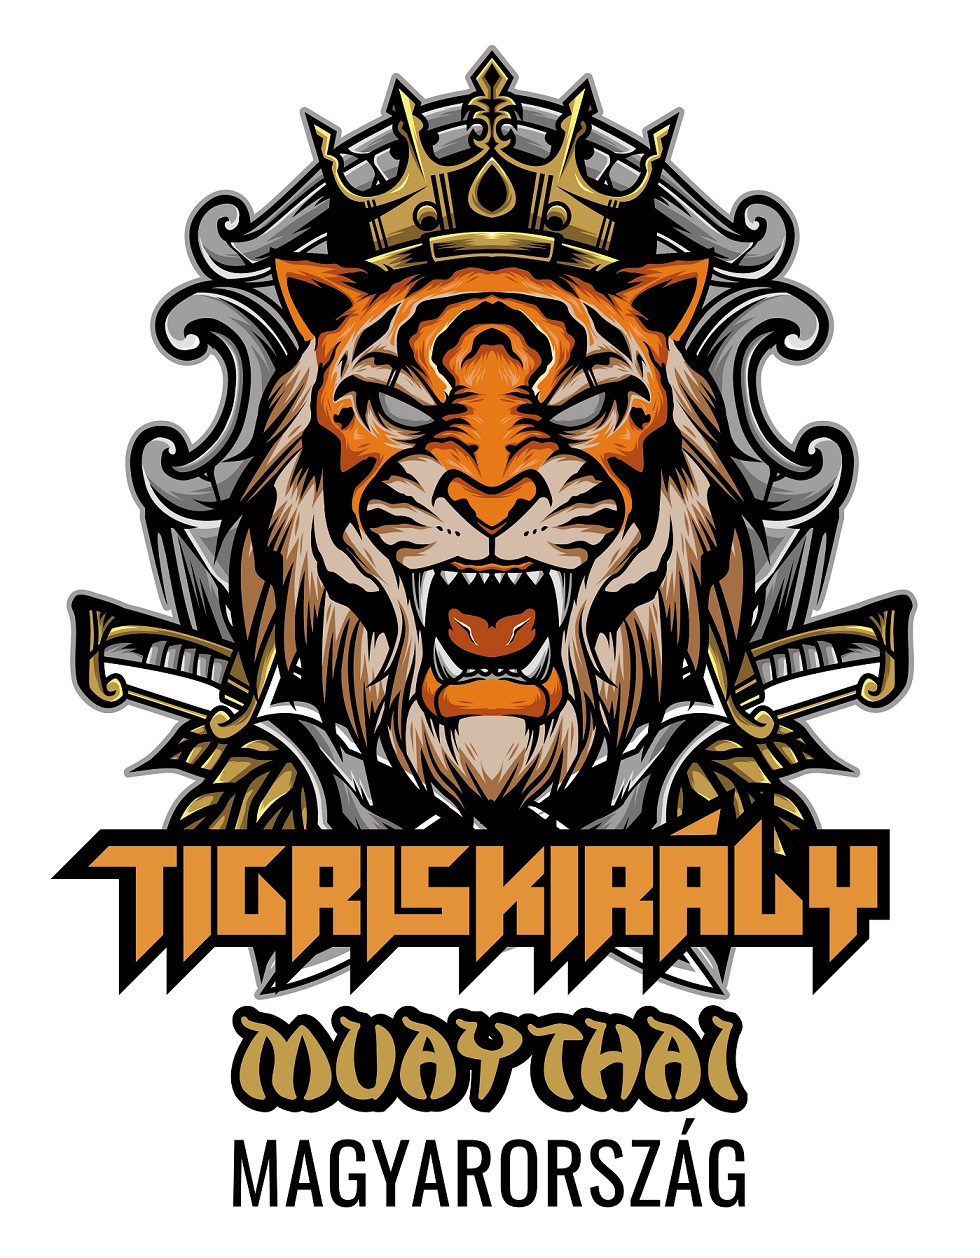 TigerKing Muaythai Hungary 